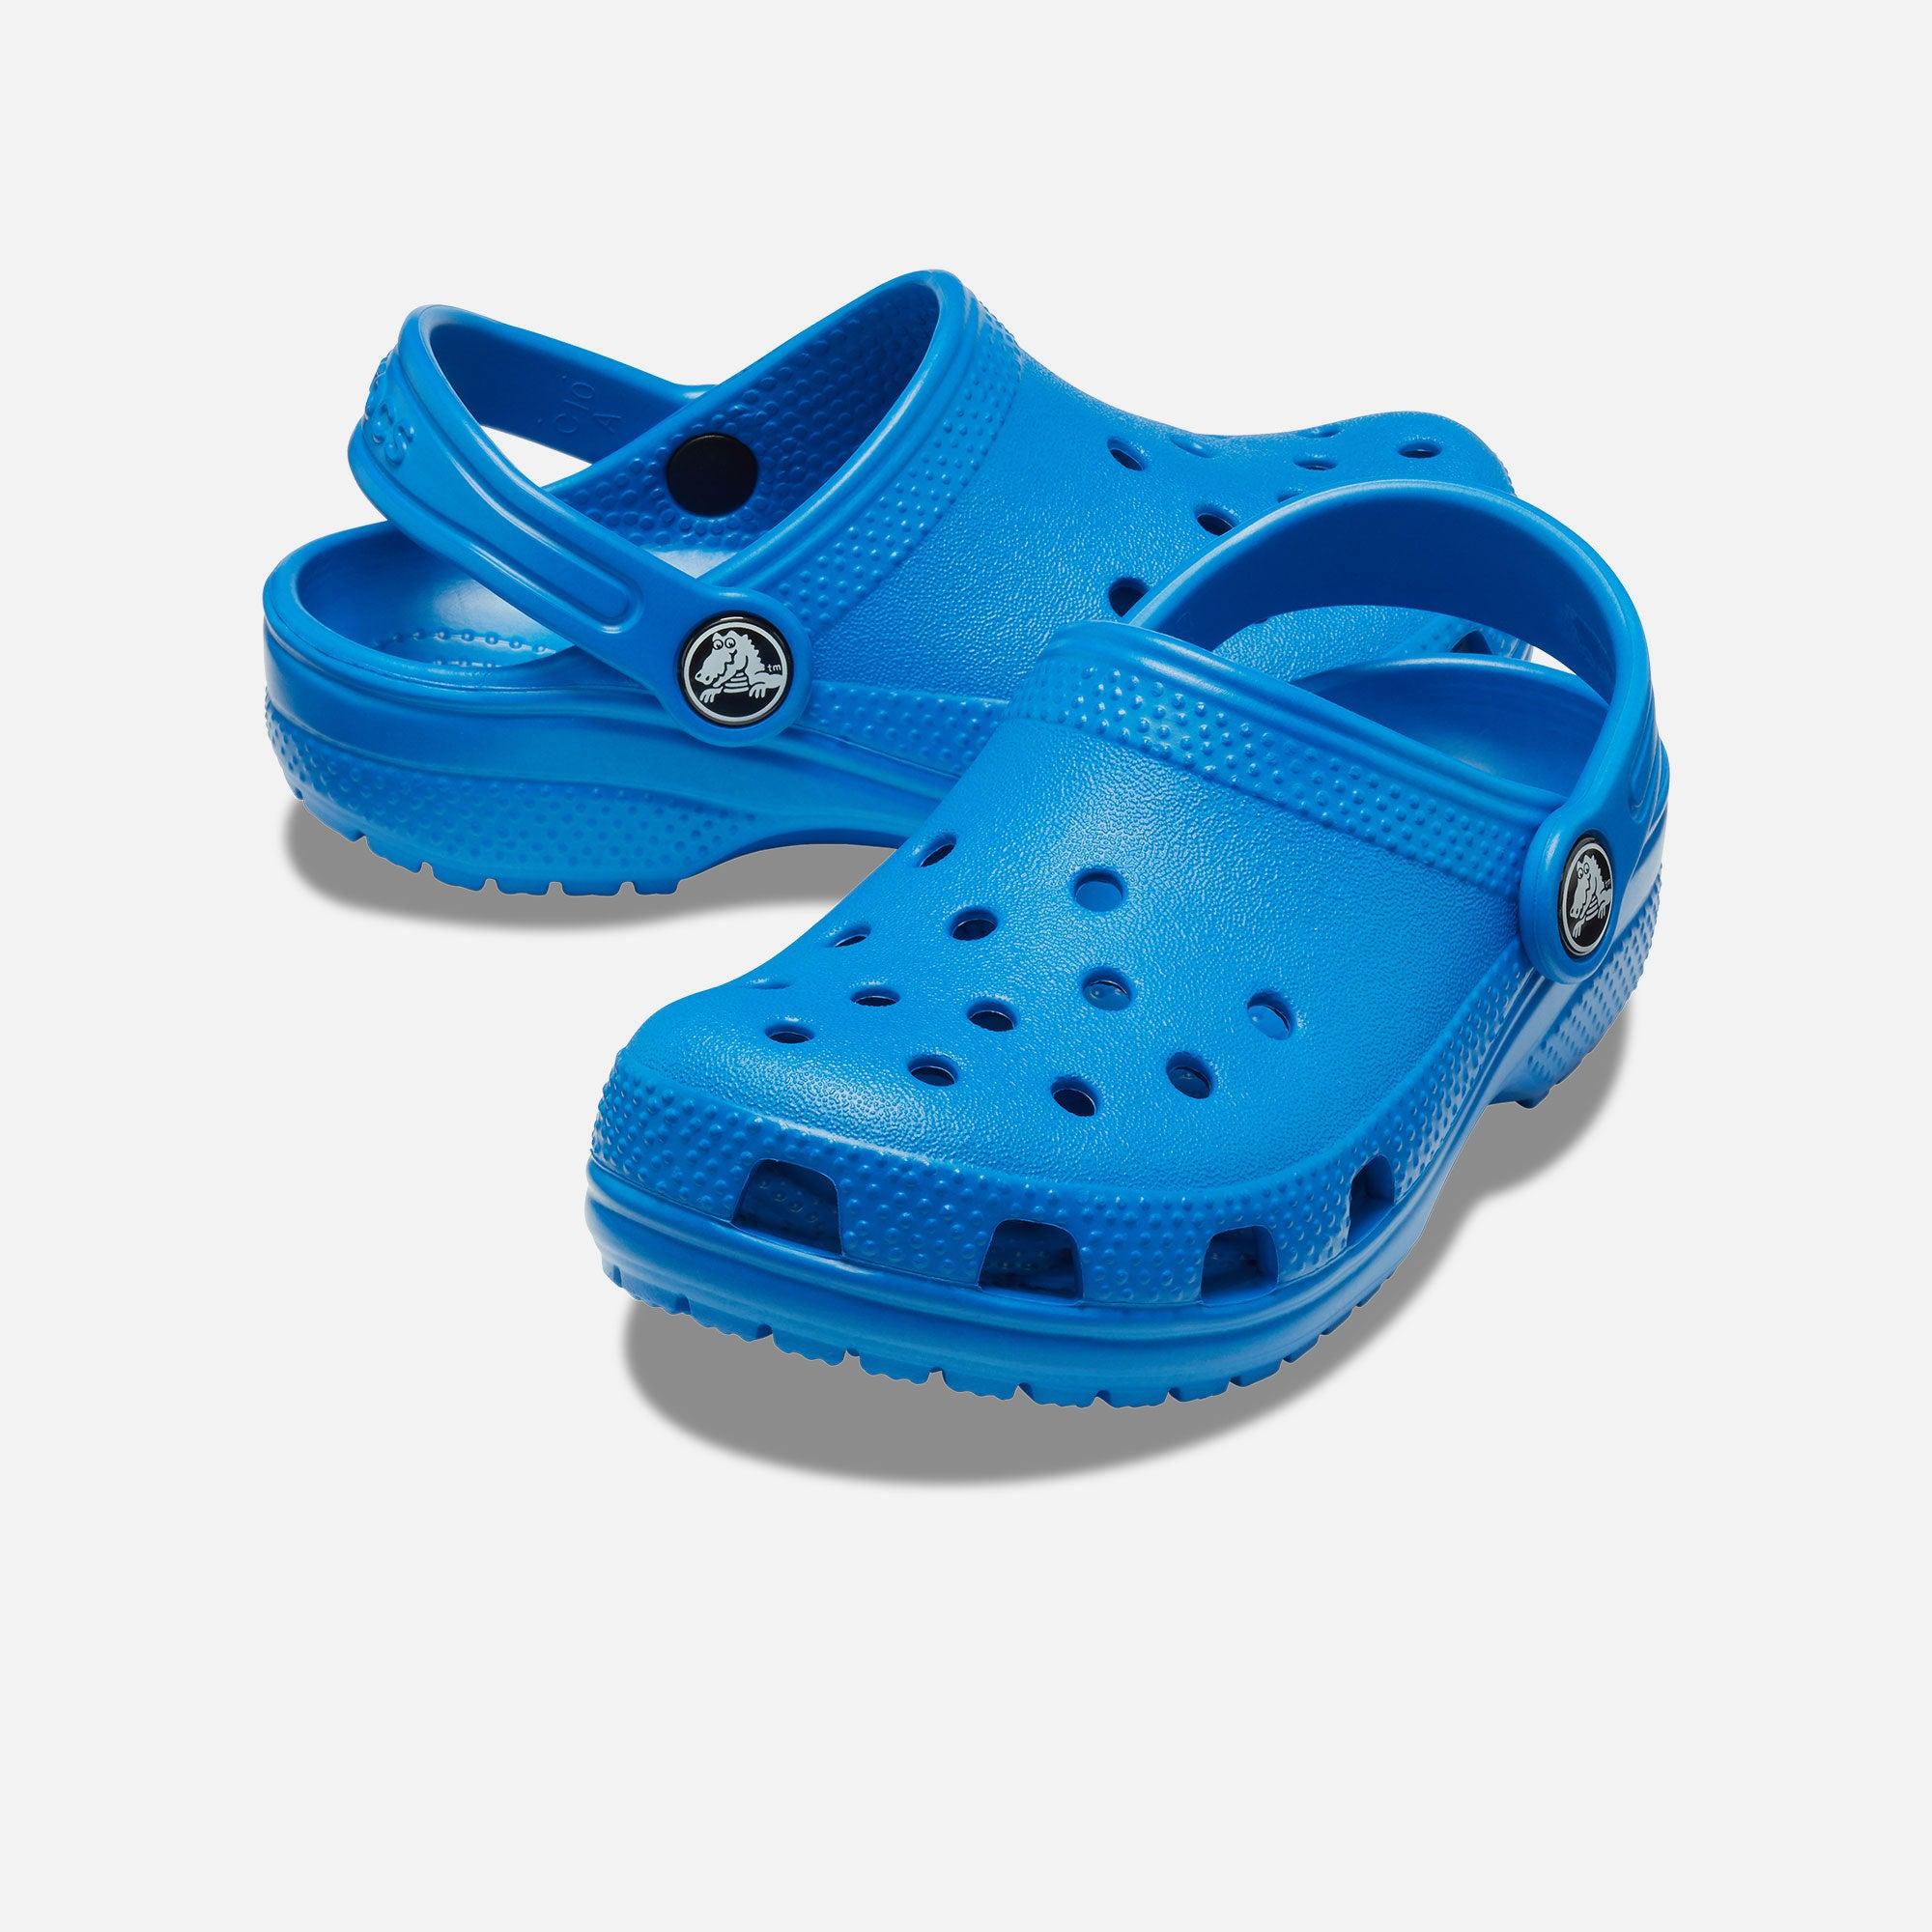 Giày nhựa thời trang trẻ em Crocs Classic - 206991-4JL